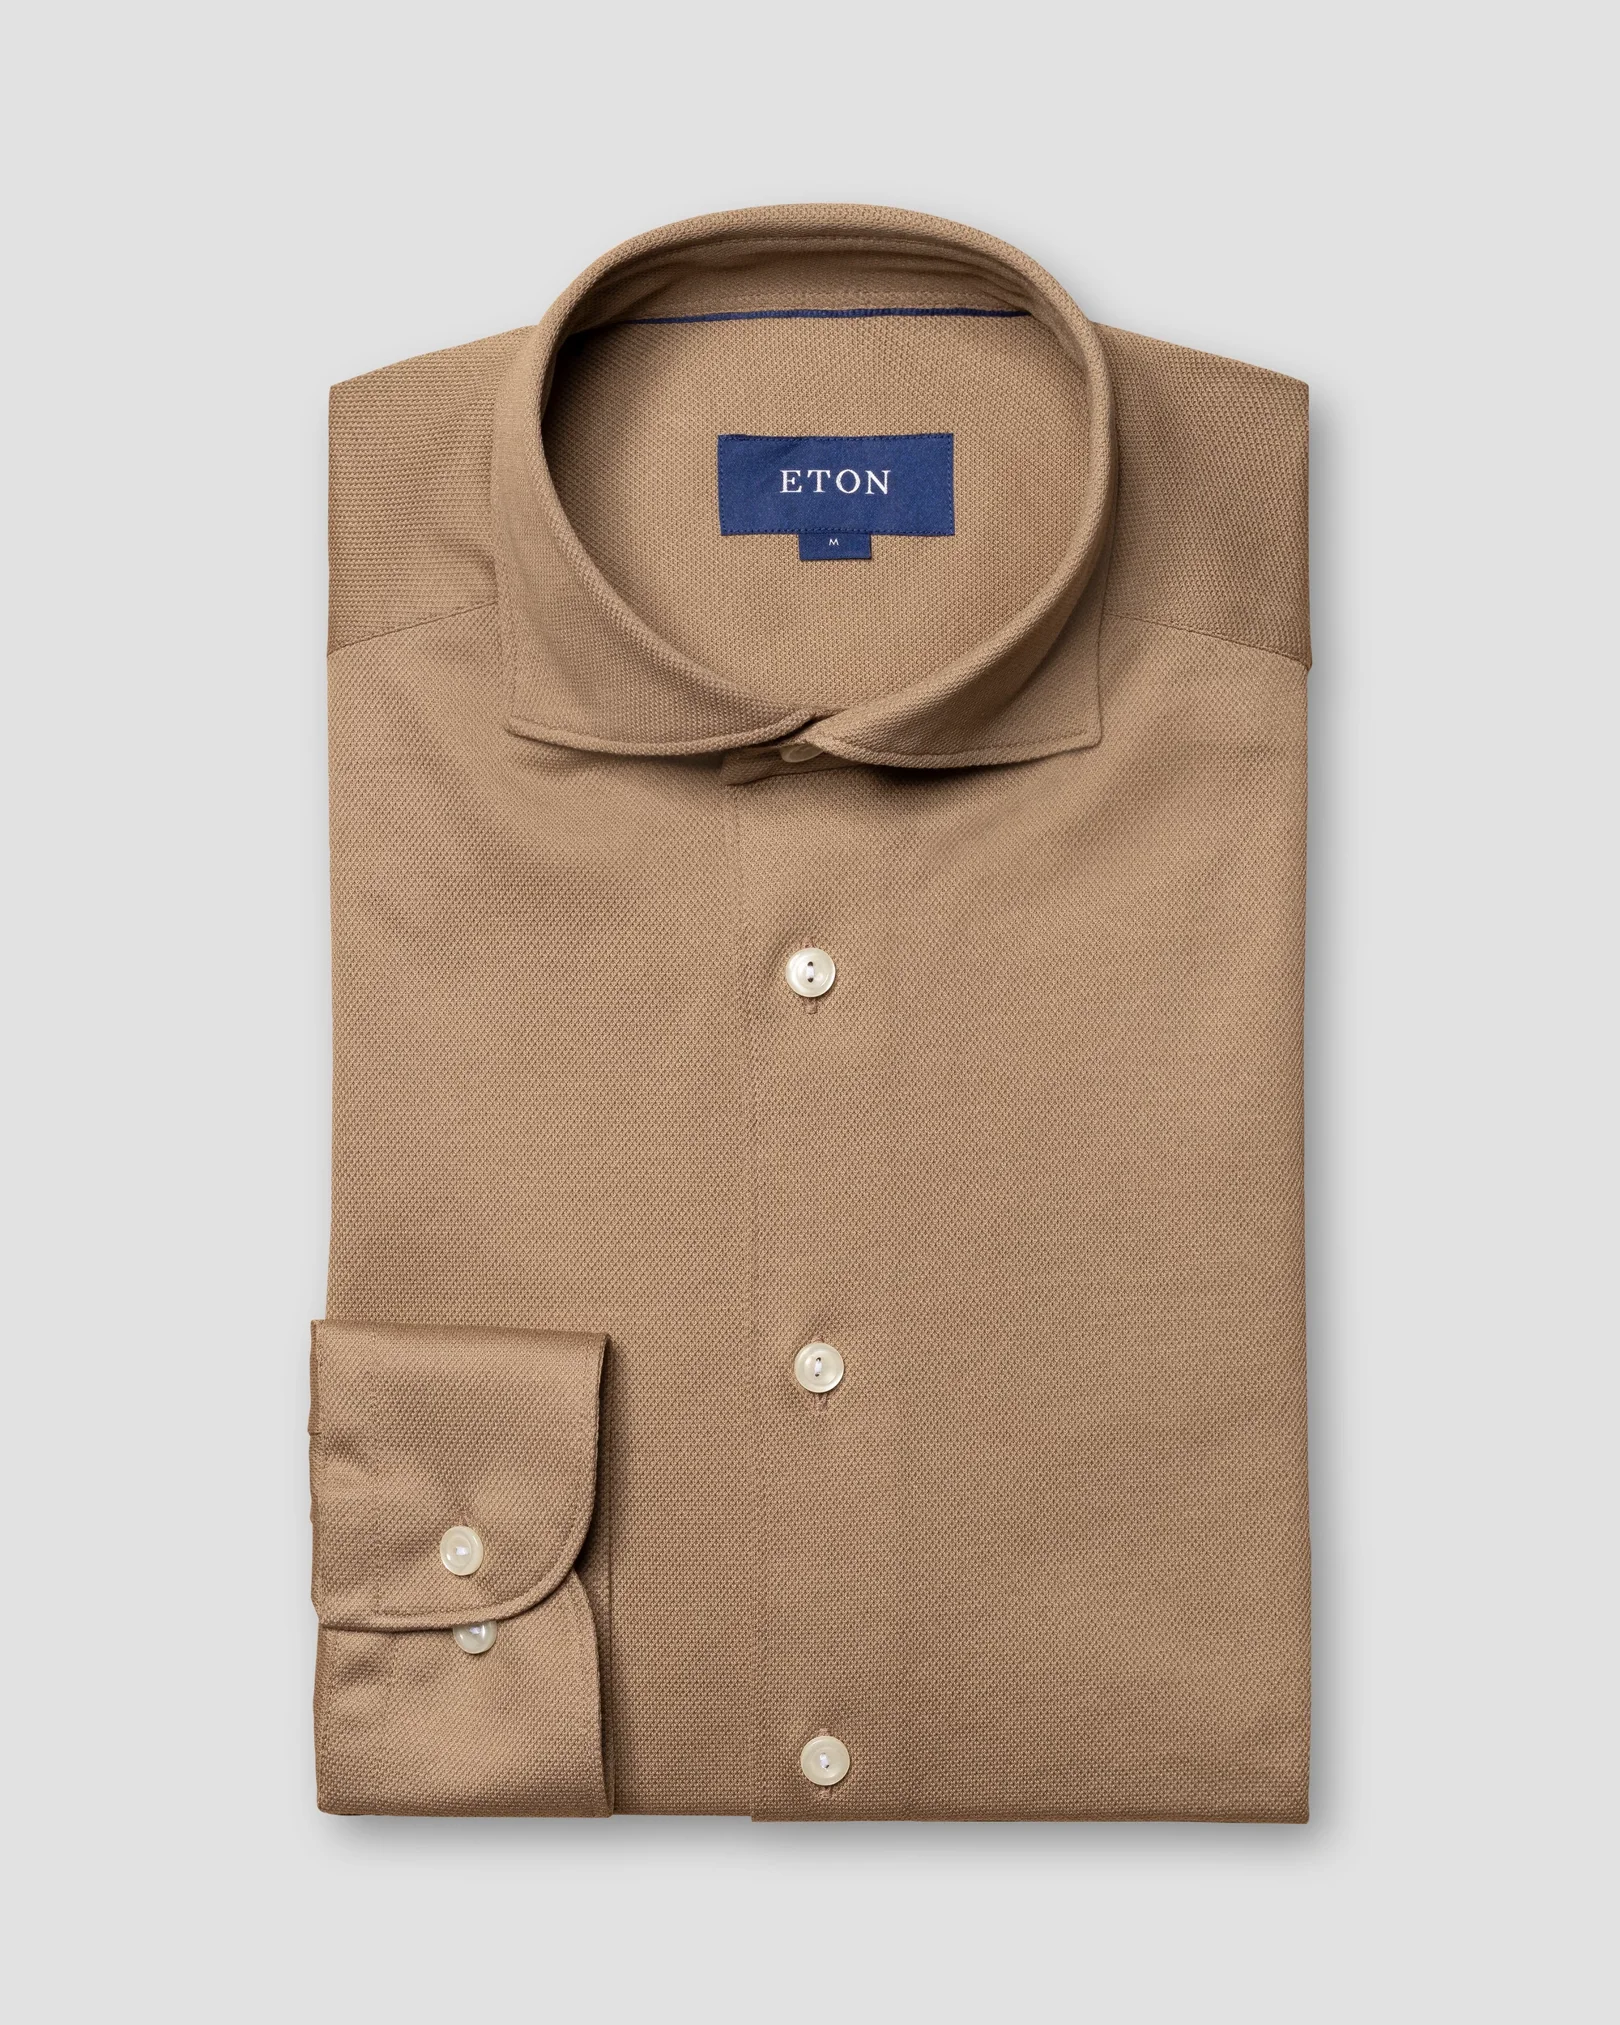 Eton - light brown pique shirt